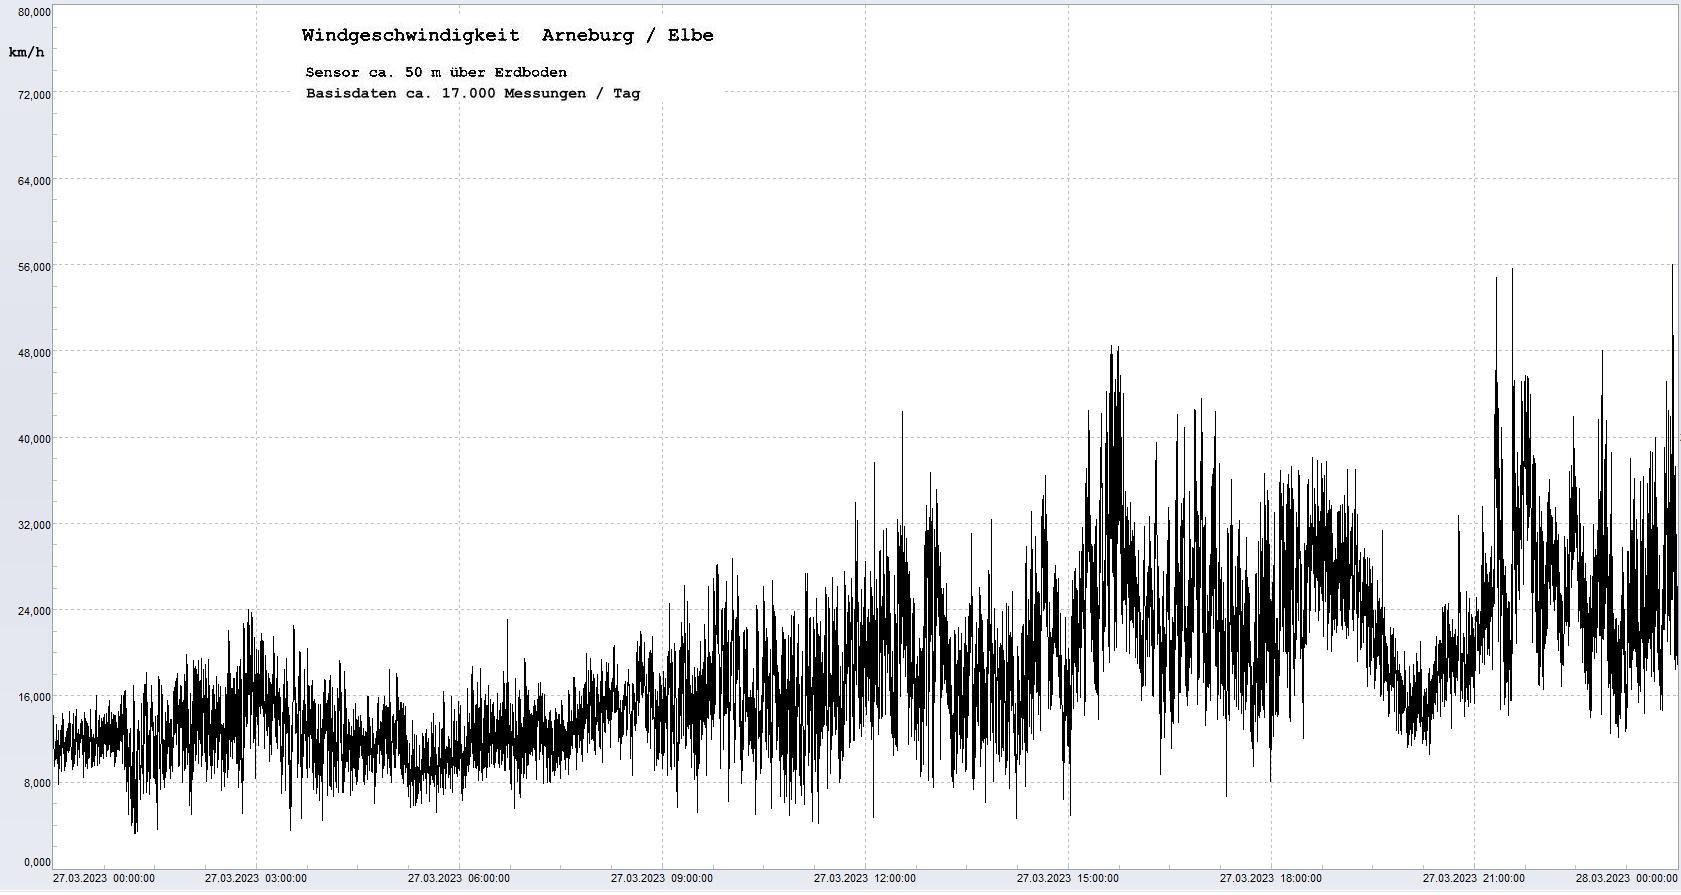 Arneburg Tages-Diagramm Winddaten, 27.03.2023
  Diagramm, Sensor auf Gebude, ca. 50 m ber Erdboden, Basis: 5s-Aufzeichnung